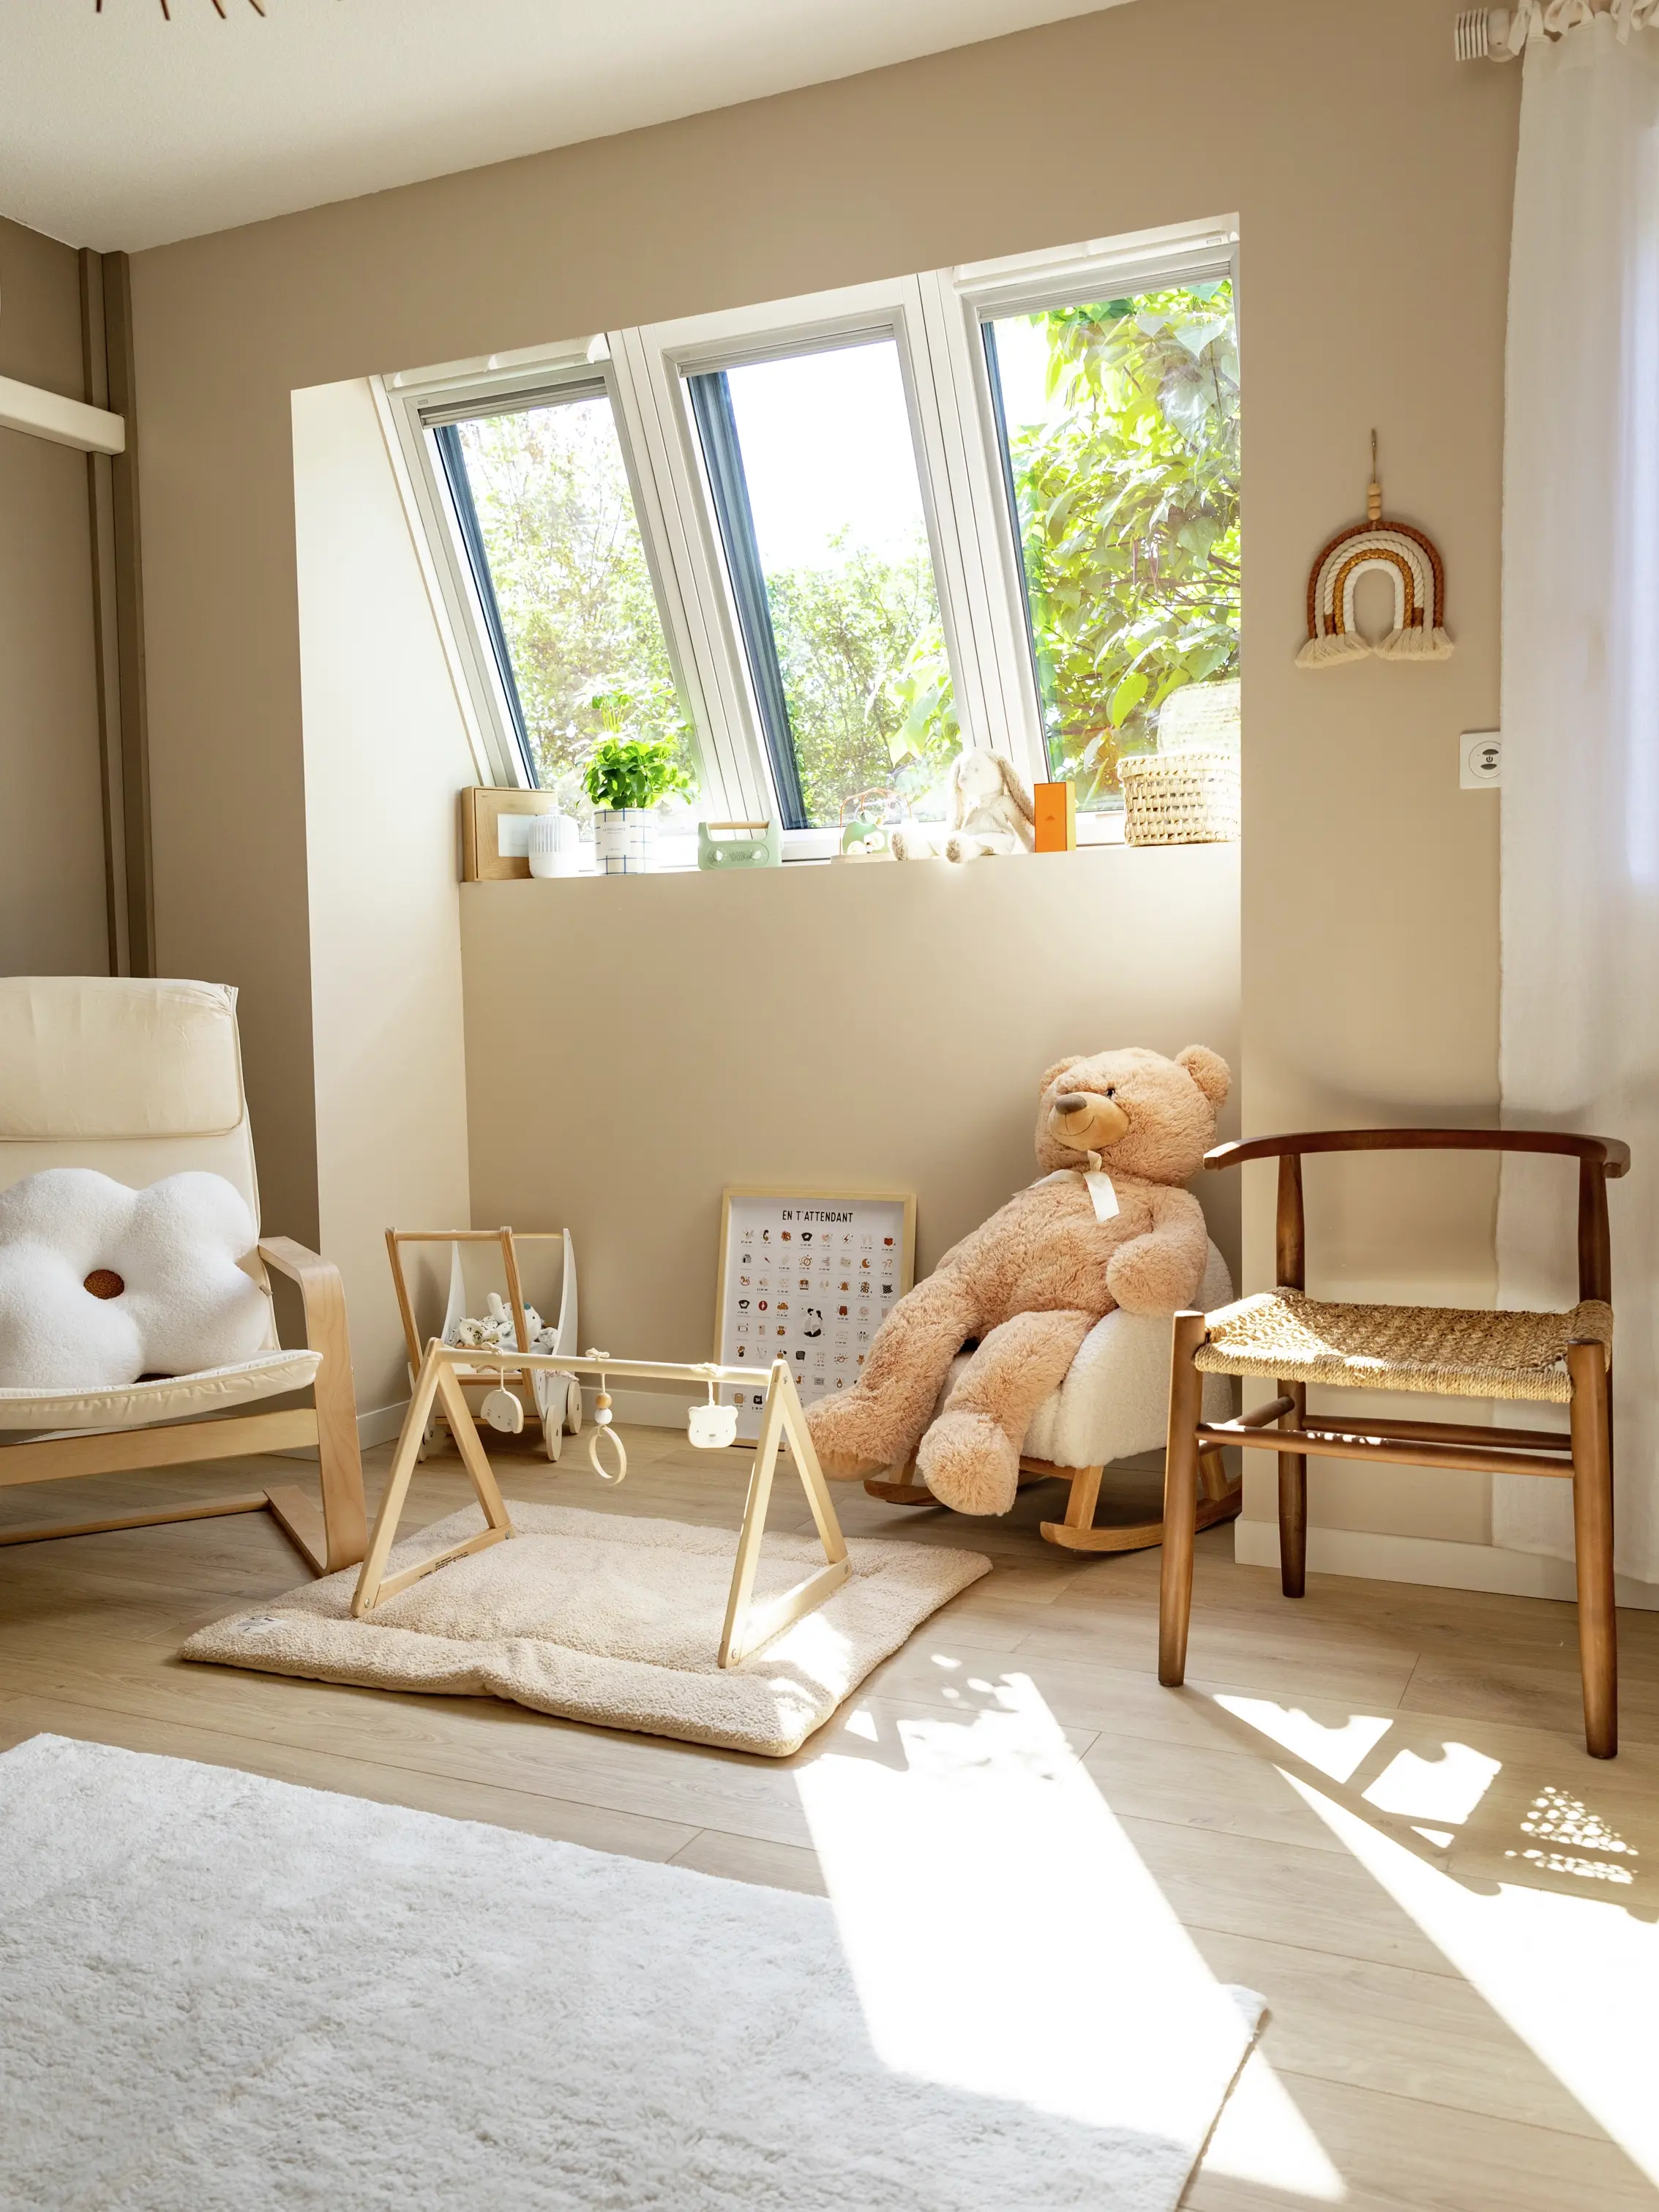 Chambre d'enfant ensoleillée avec ours en peluche et meubles en bois.